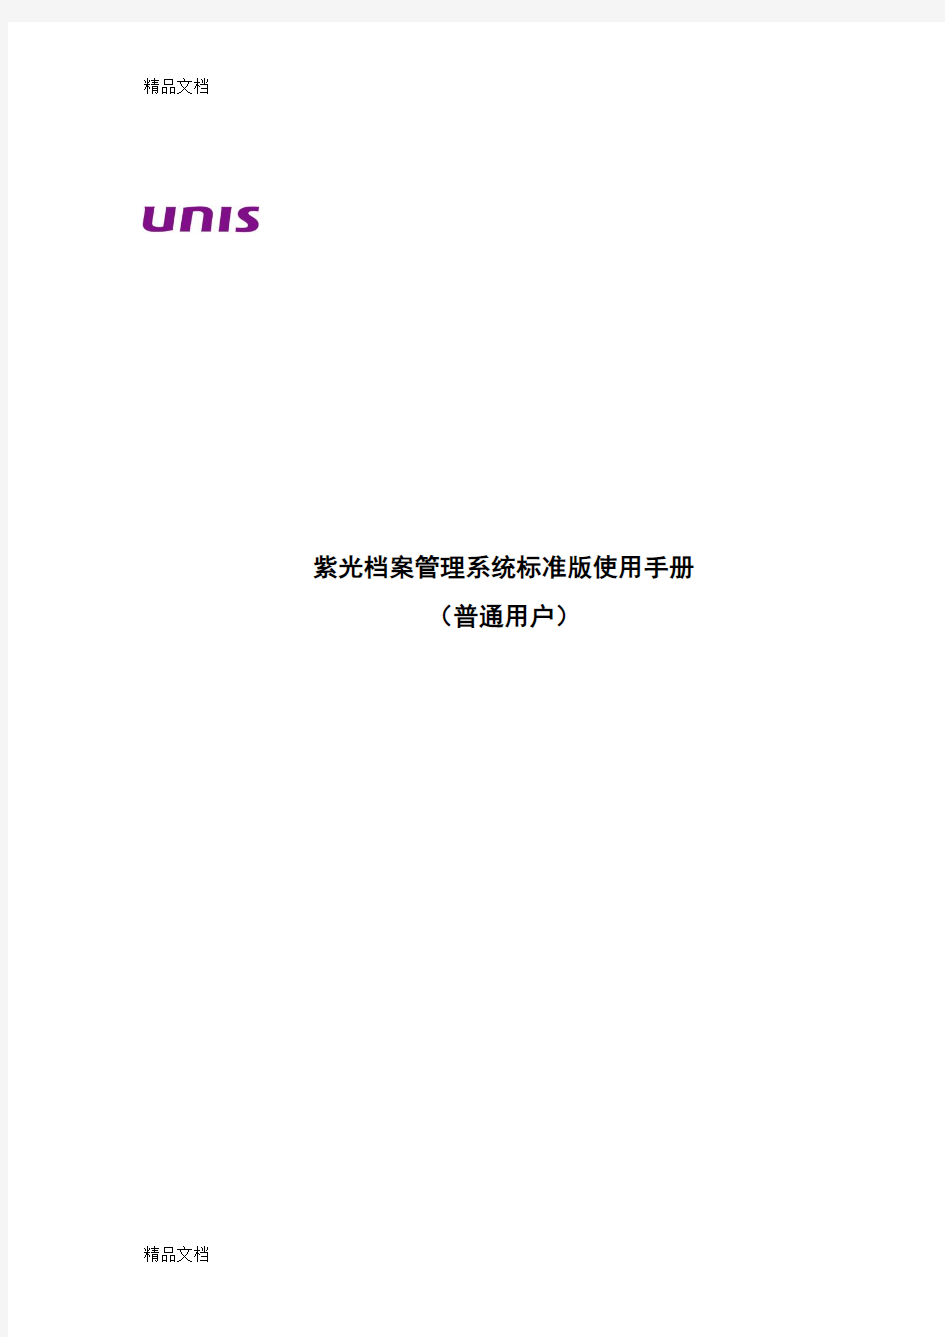 最新紫光档案管理系统使用手册资料